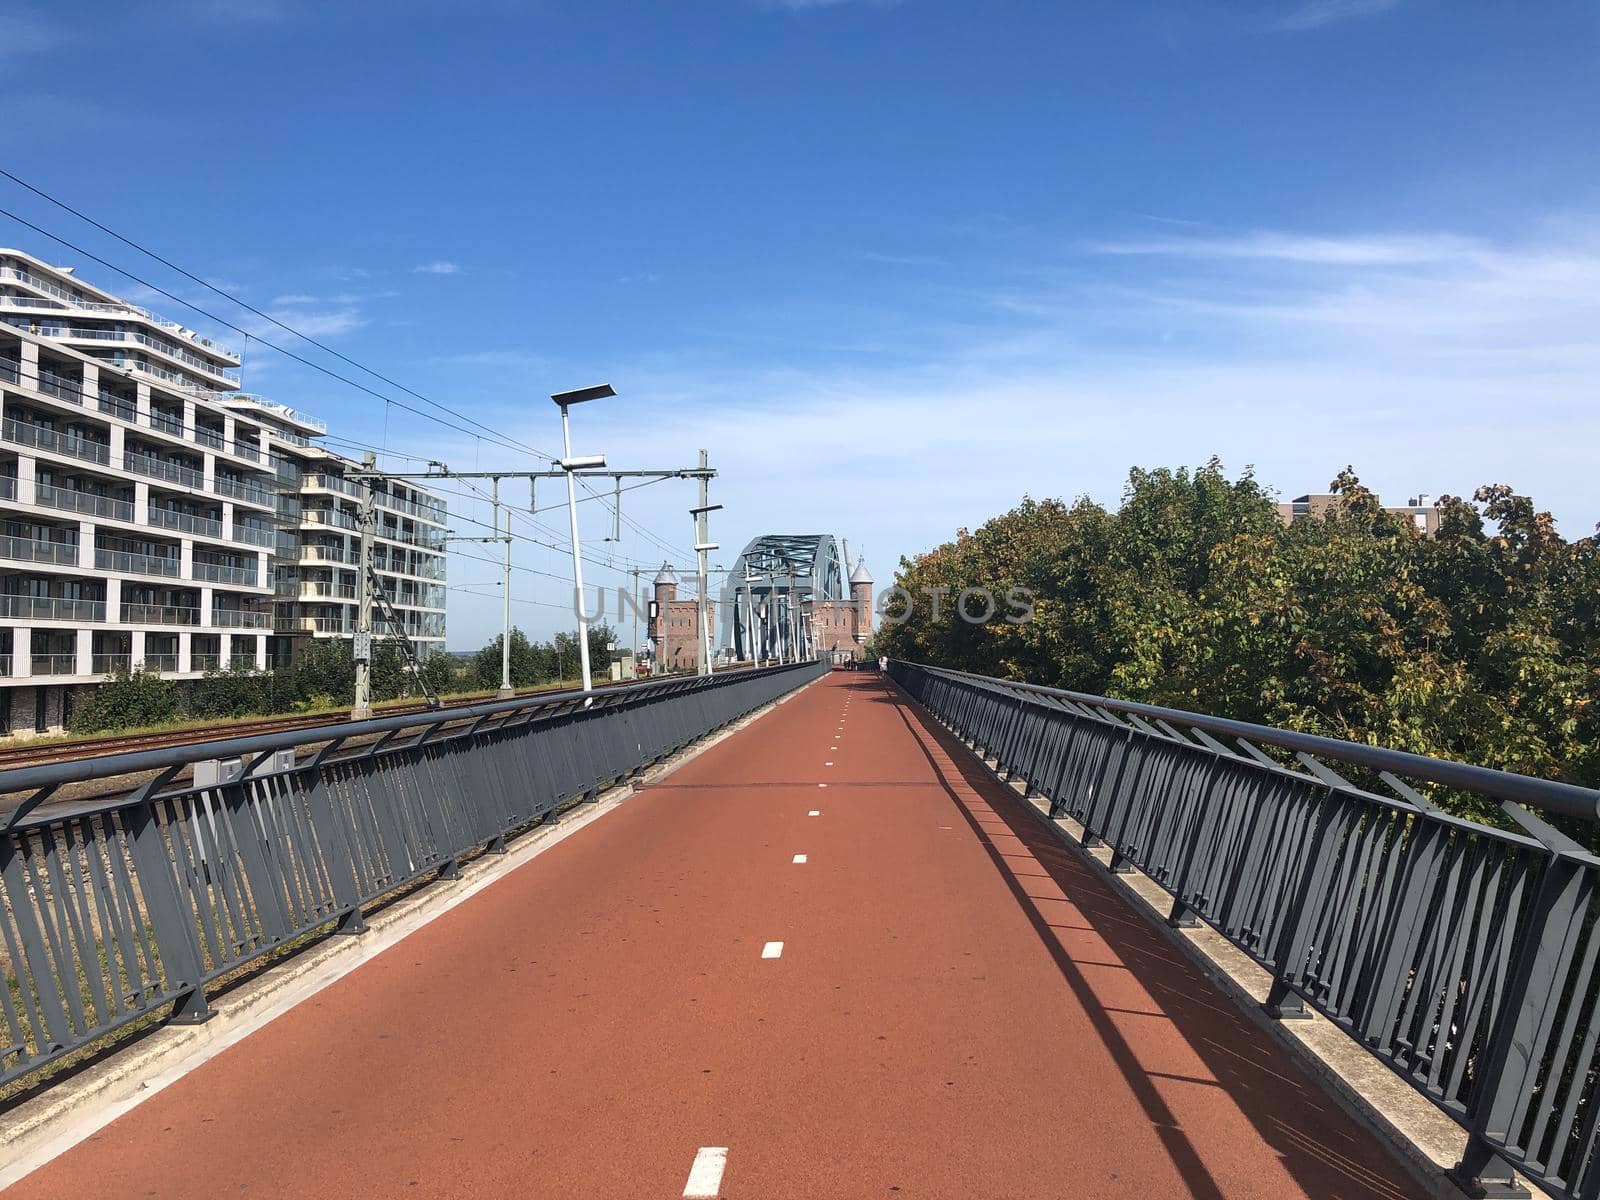 The railway bridge over the Waal river in Nijmegen, Gelderland The Netherlands